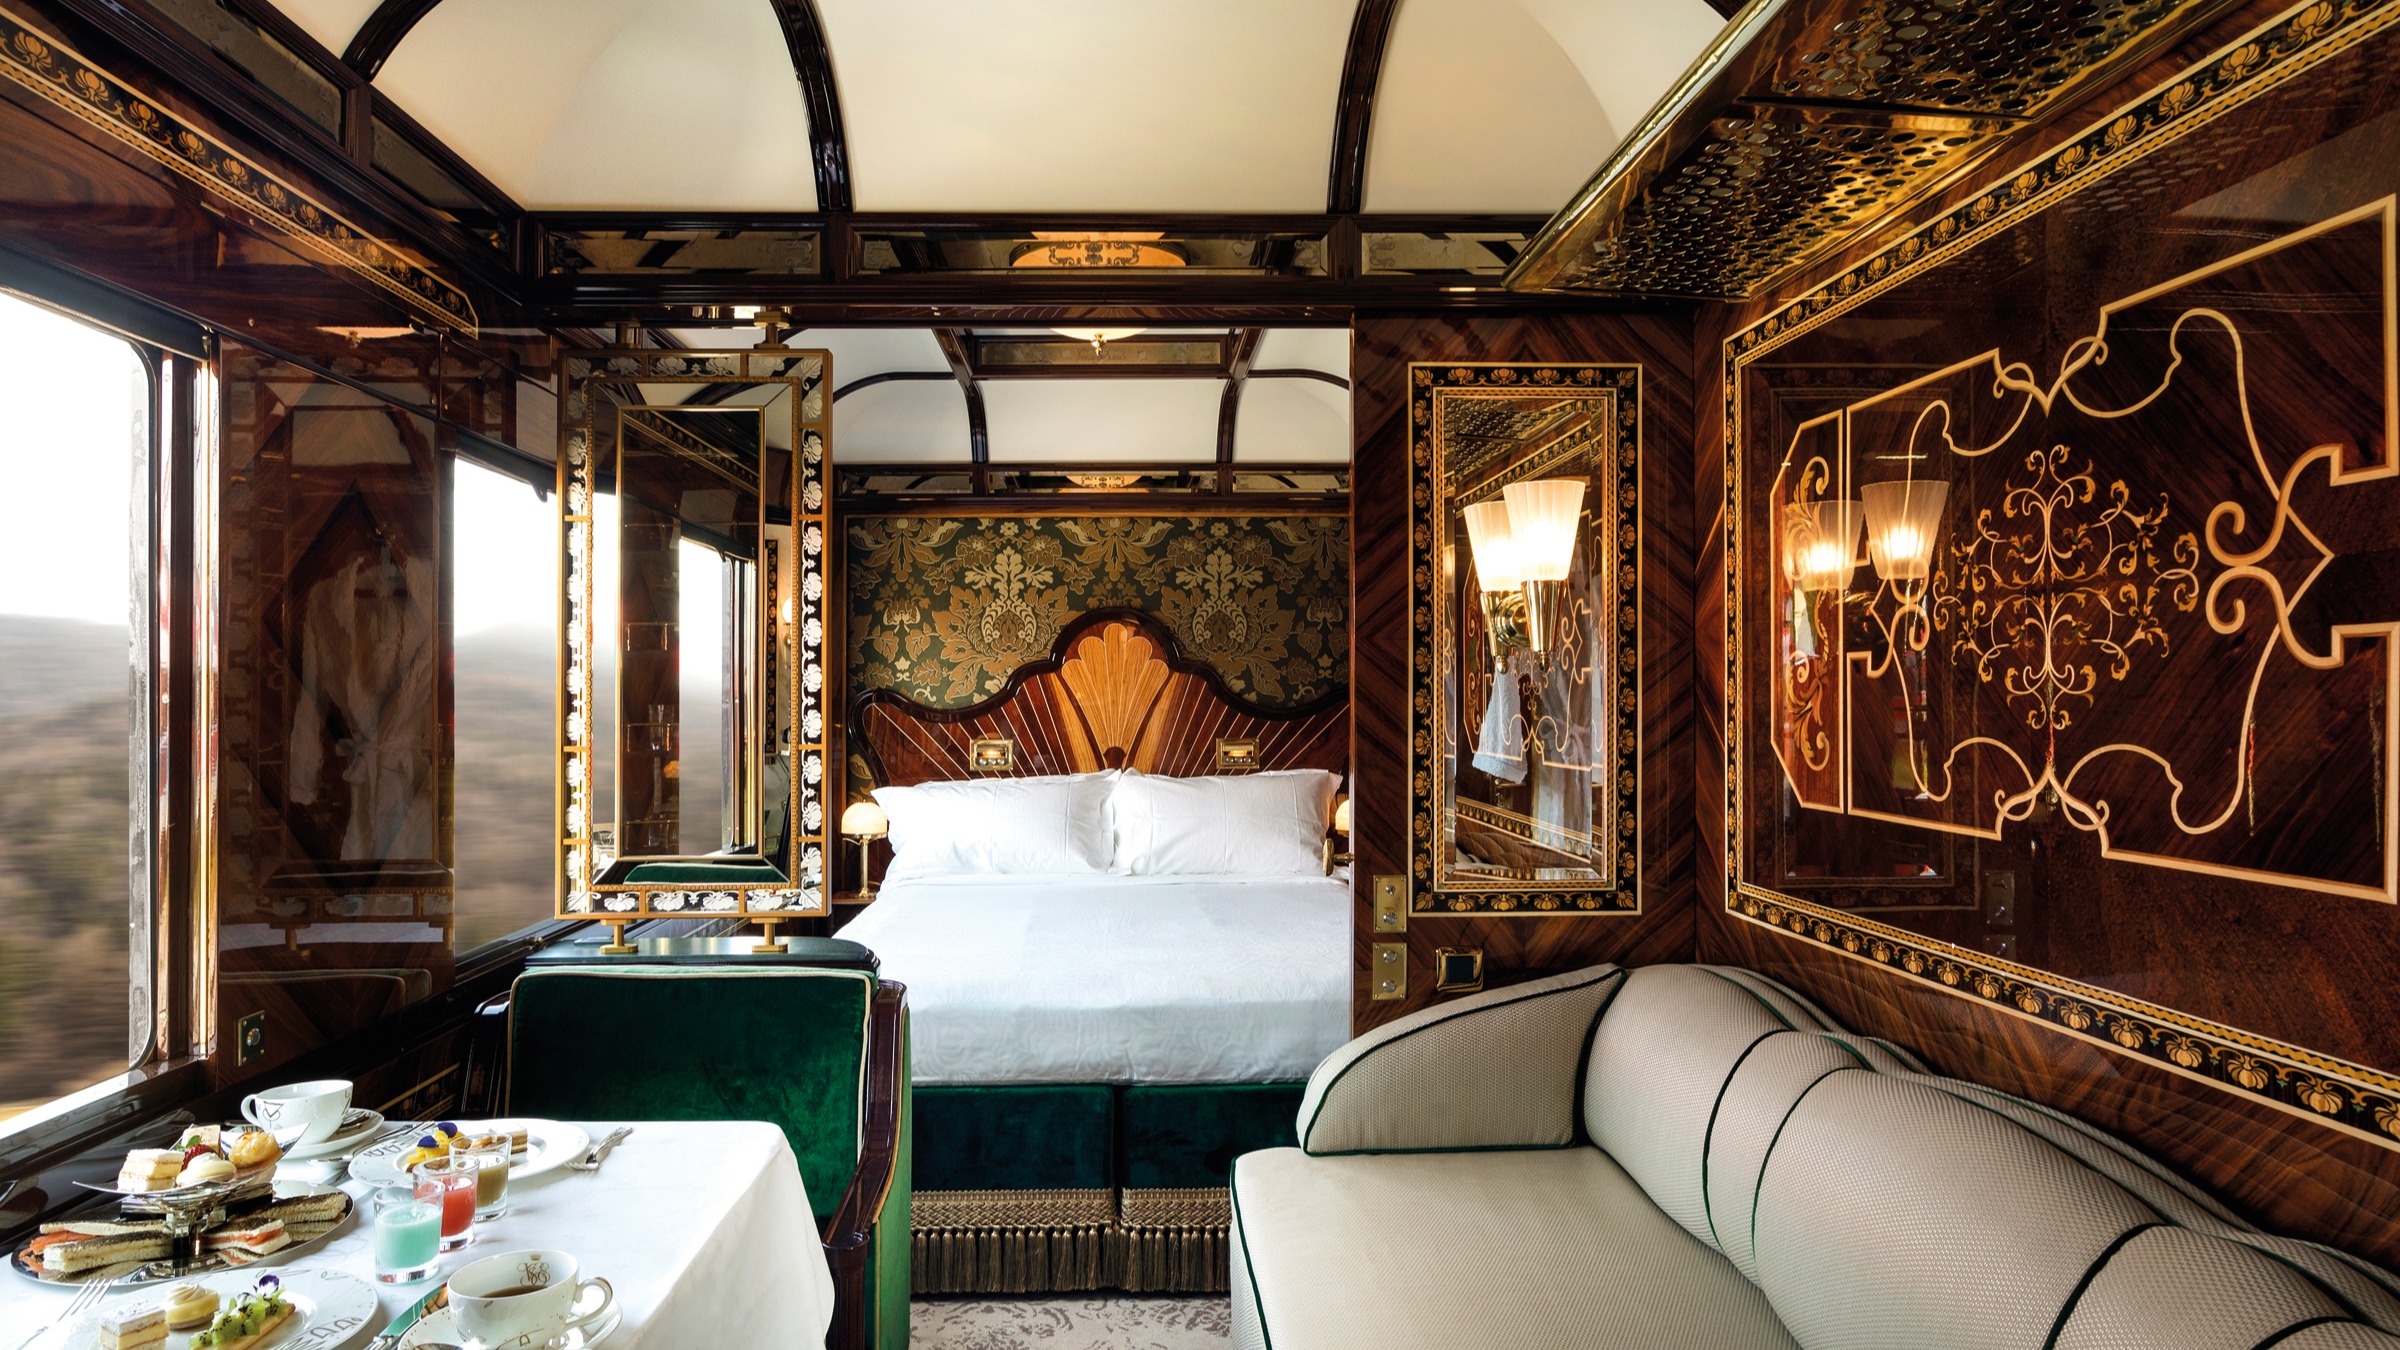 overzee Vervolg interieur The Roaring Twenties recaptured on the Orient Express | Financial Times